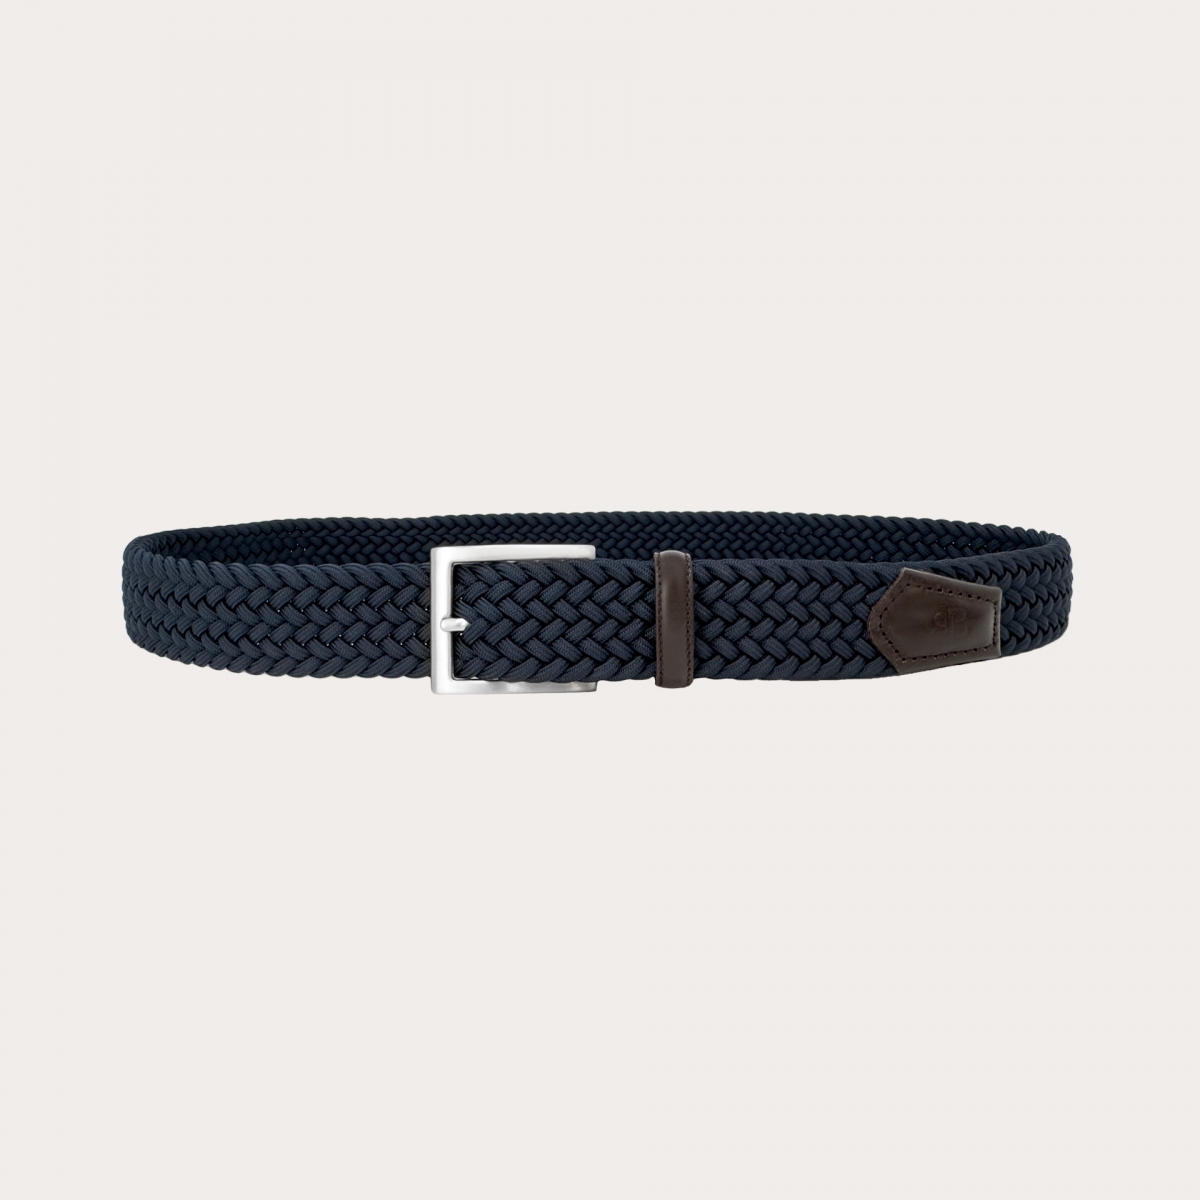 Cinturón elástico trenzado azul con cuero marrón oscuro